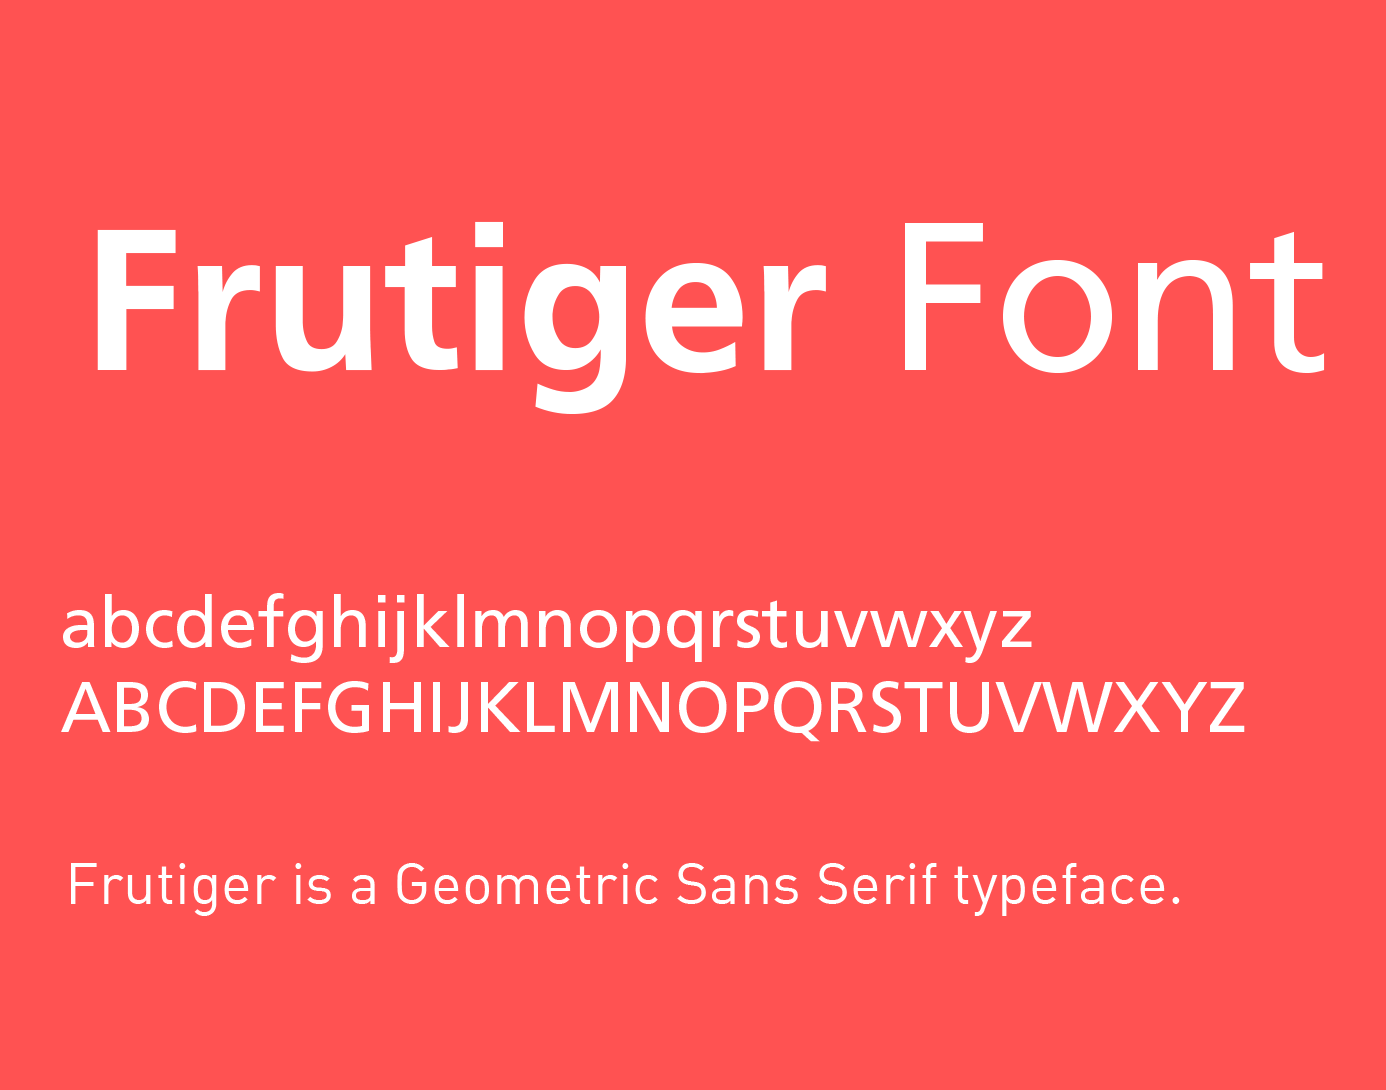 frutiger bold font free